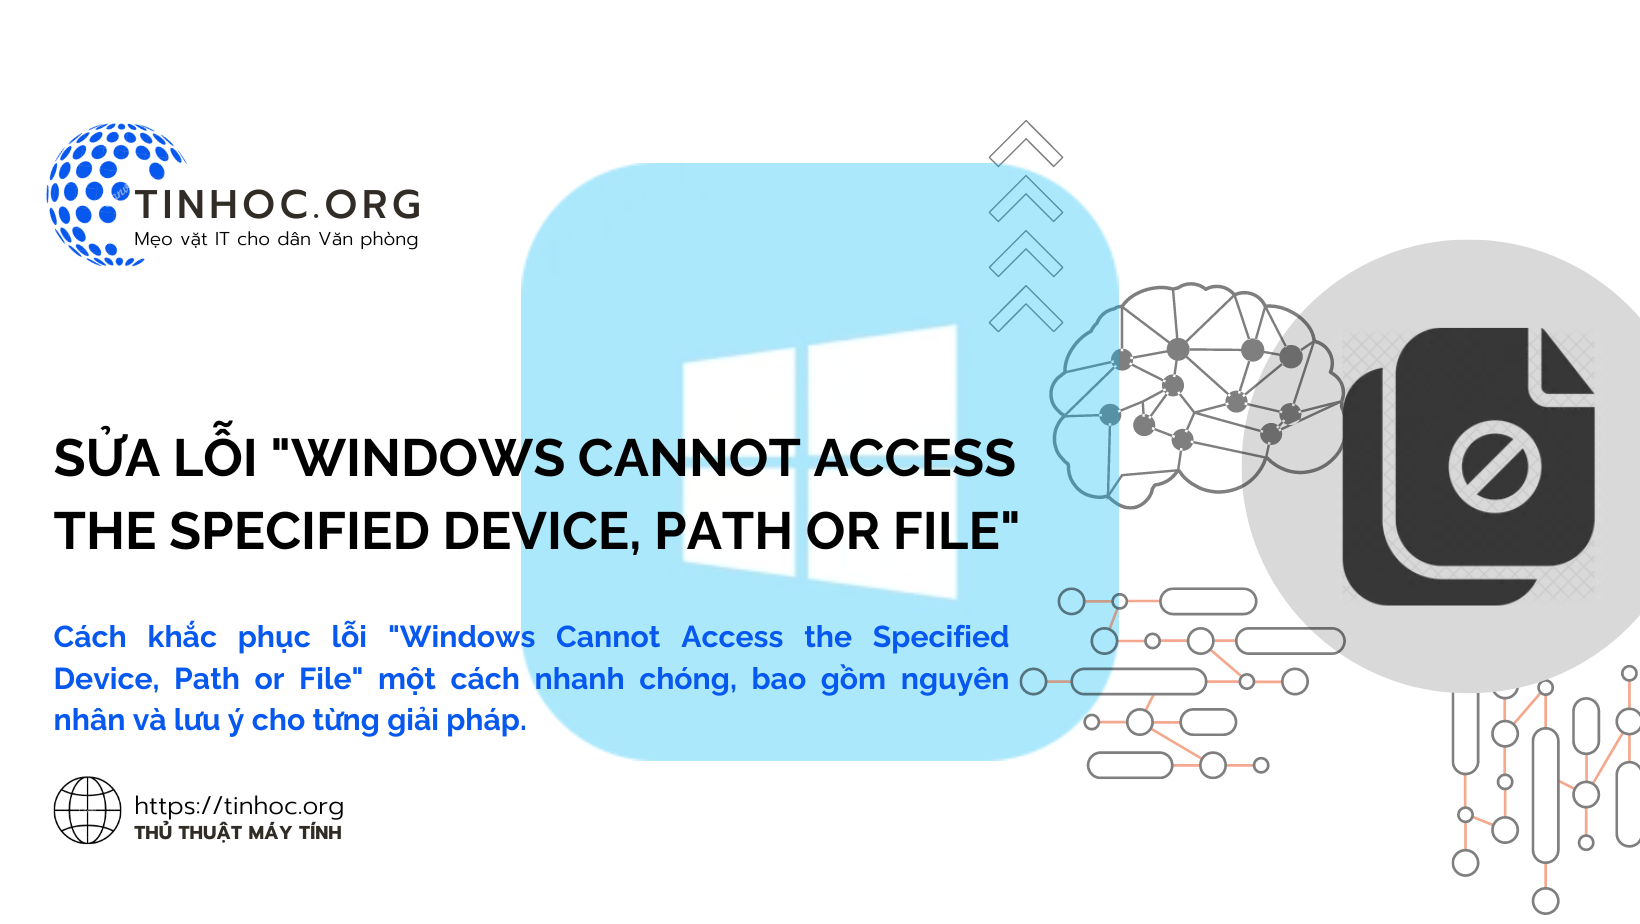 Cách khắc phục lỗi "Windows Cannot Access the Specified Device, Path or File" một cách nhanh chóng, bao gồm nguyên nhân và lưu ý cho từng giải pháp.